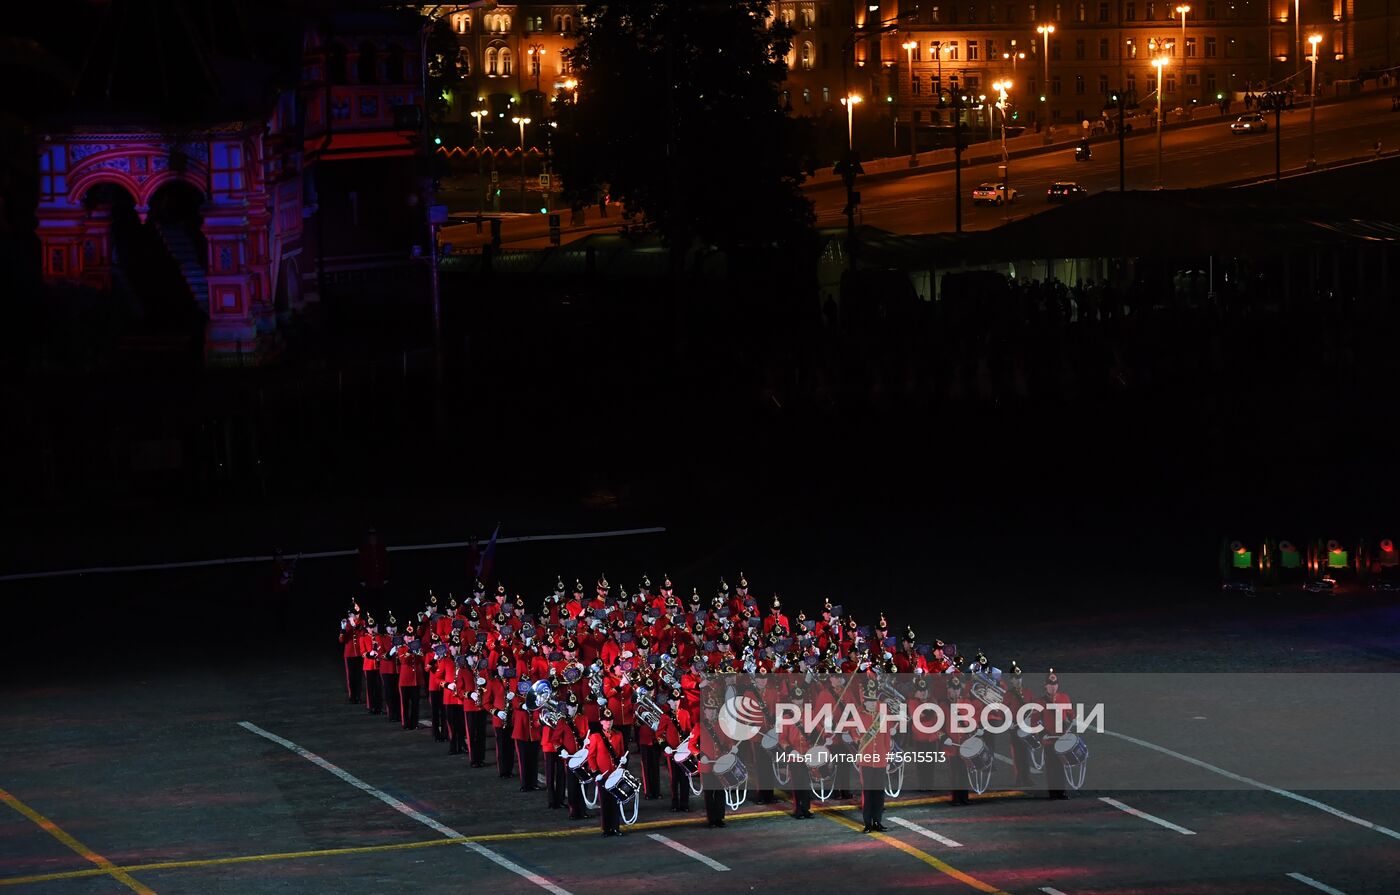 Генеральная репетиция церемонии открытия фестиваля "Спасская башня" 